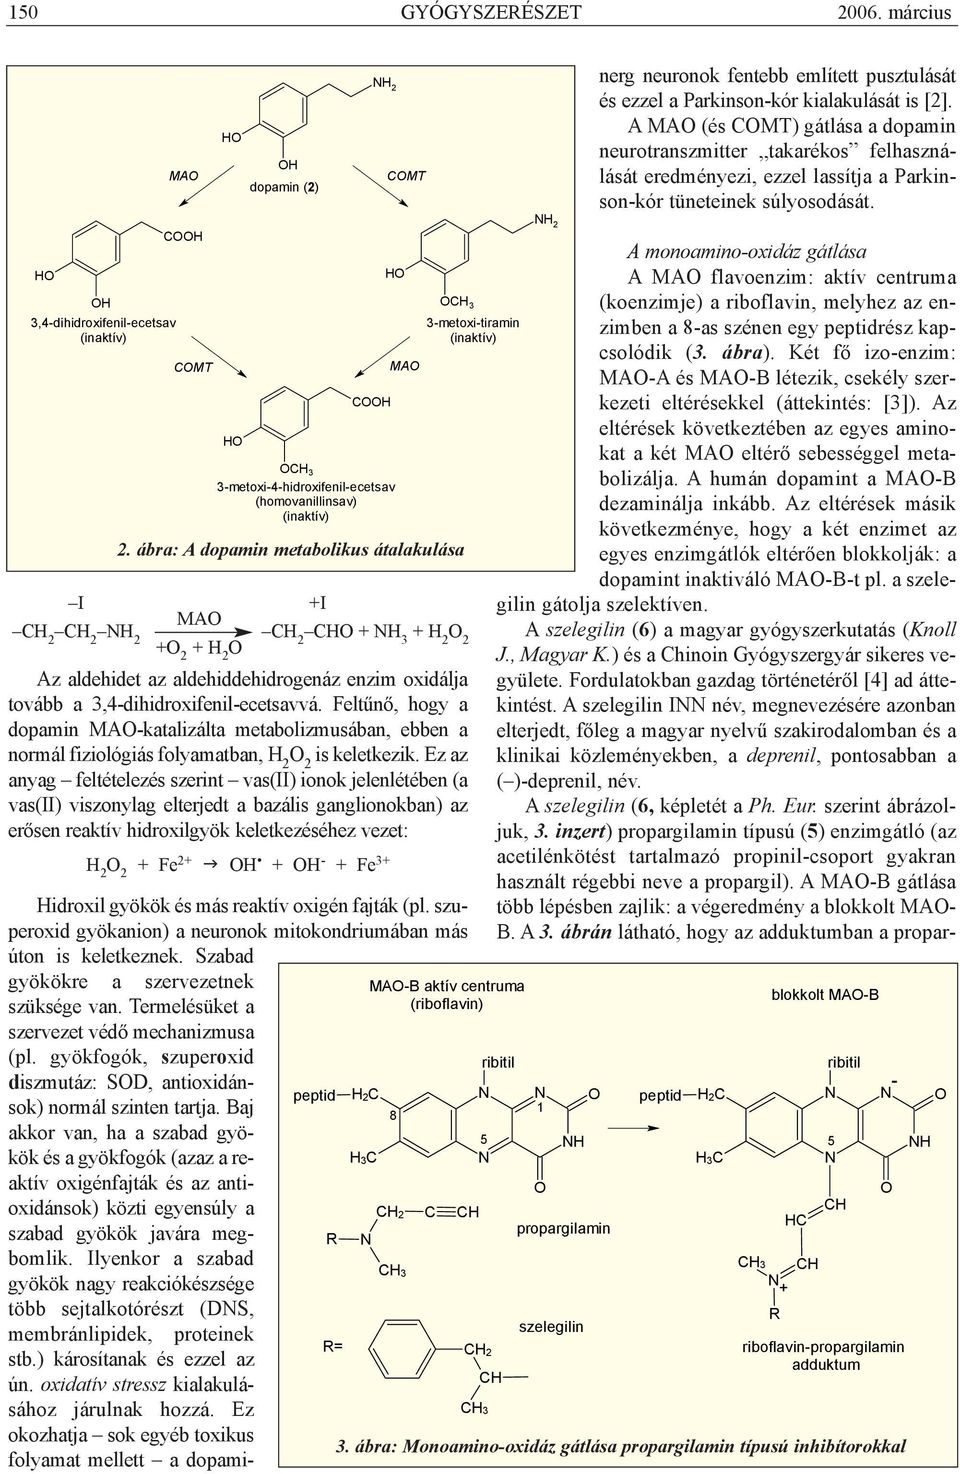 Feltûnõ, hogy a dopamin MAO-katalizálta metabolizmusában, ebben a normál fiziológiás folyamatban, H 2 O 2 is keletkezik.